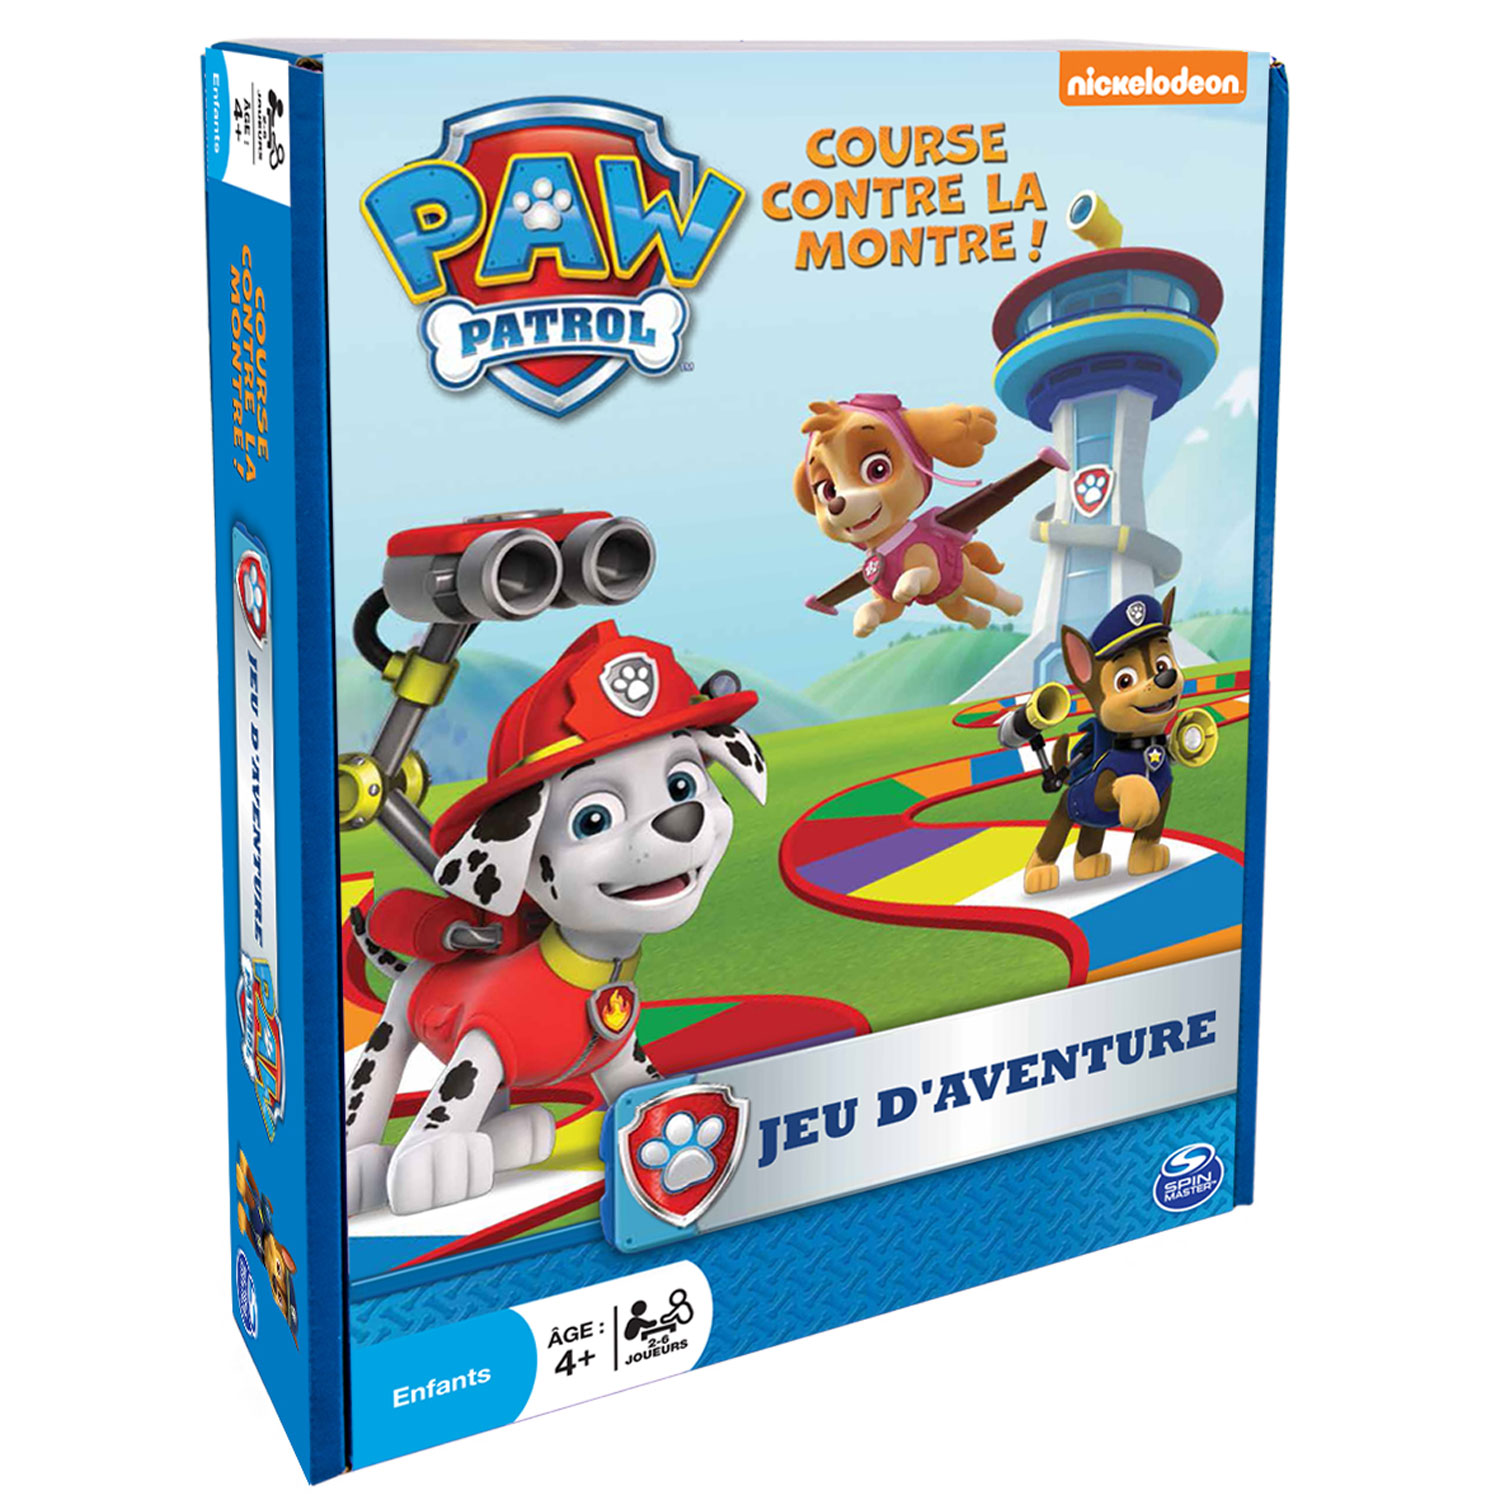 Jeu d'aventure Pat'Patrouille (PAW Patrol) - Jeux et jouets Spin